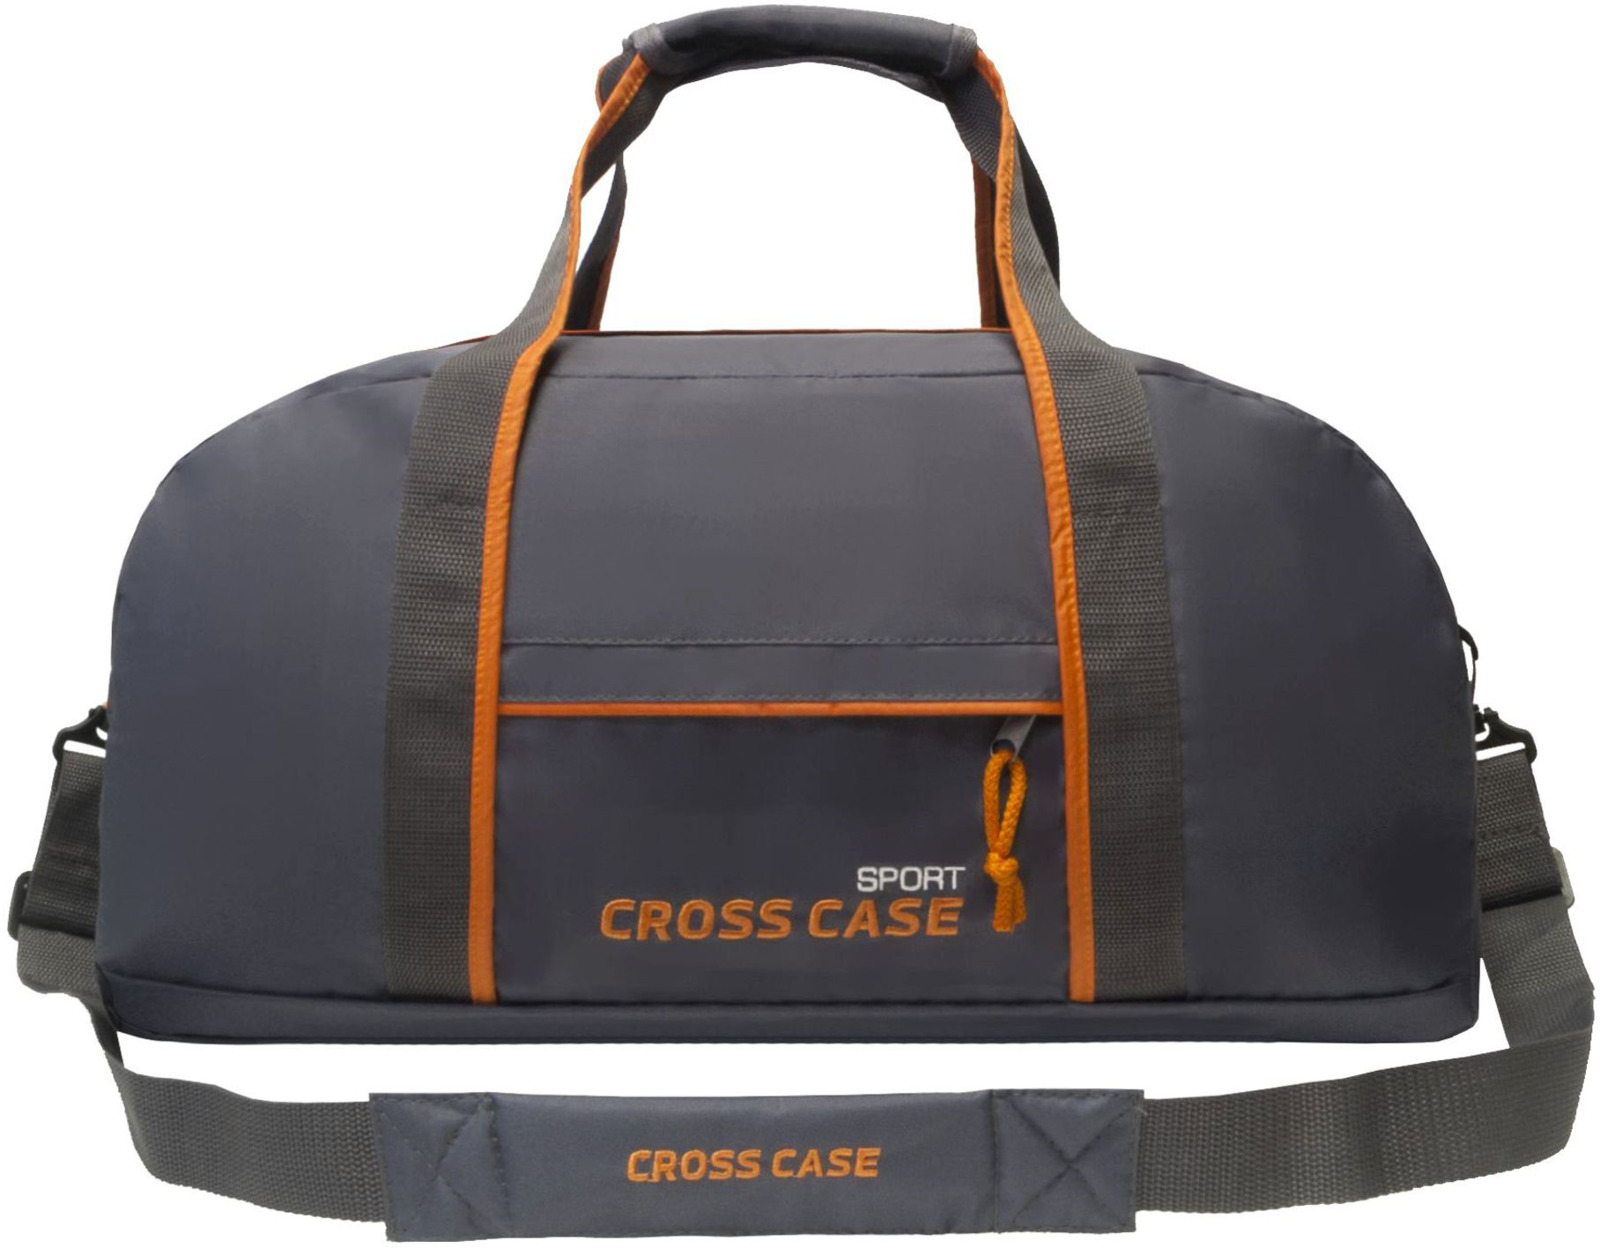 Сумка Cross Case, цвет: серый, оранжевый. CCS-1040-08